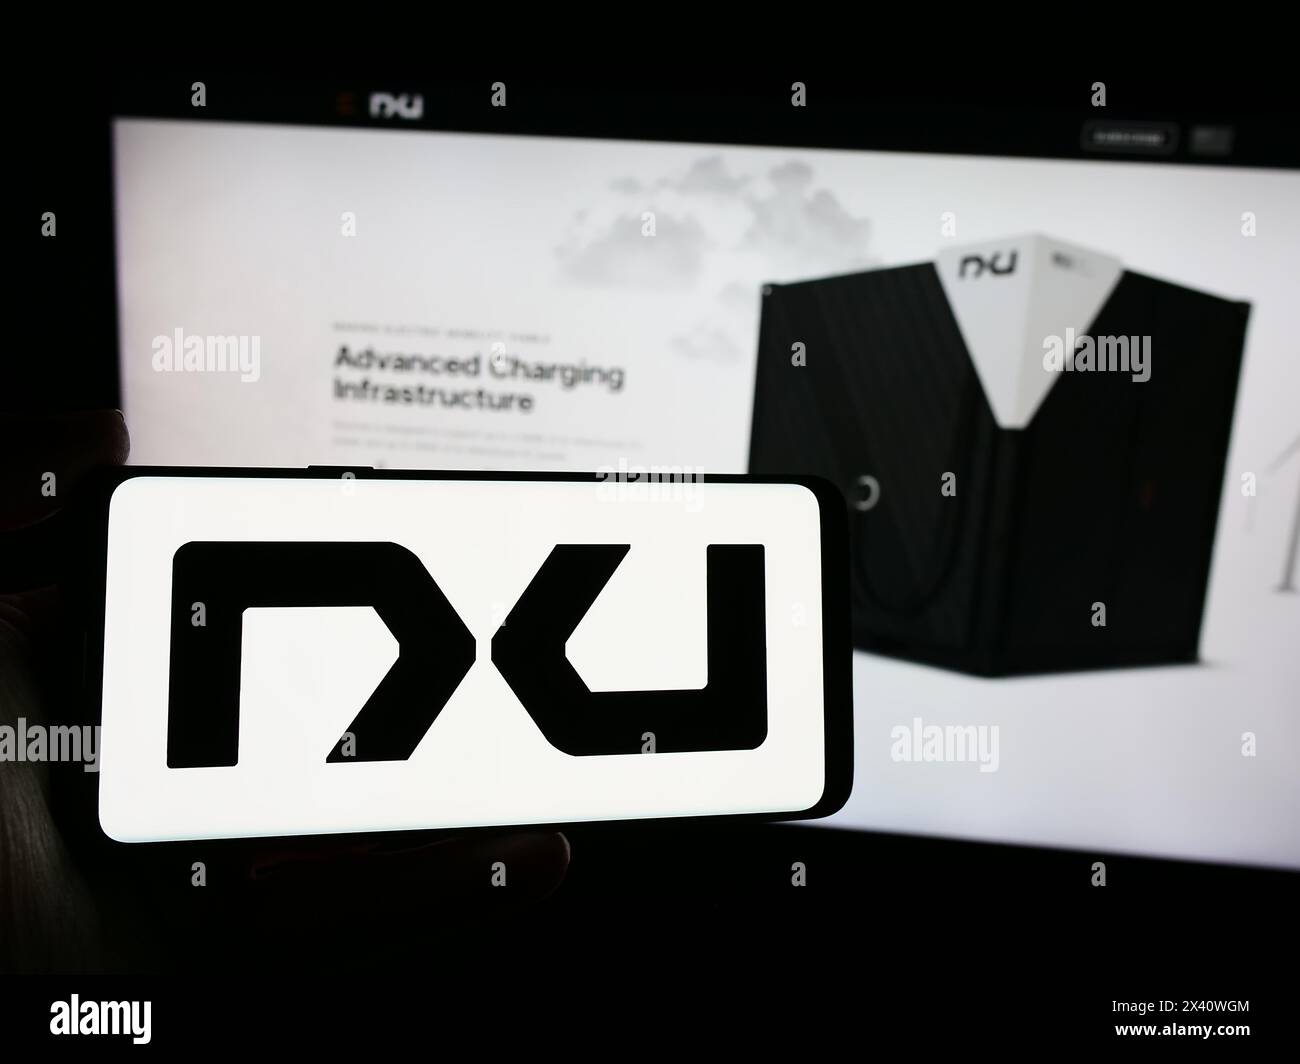 Persona che possiede uno smartphone con il logo dell'azienda statunitense Nxu Inc. Di fronte al sito Web. Mettere a fuoco il display del telefono. Foto Stock